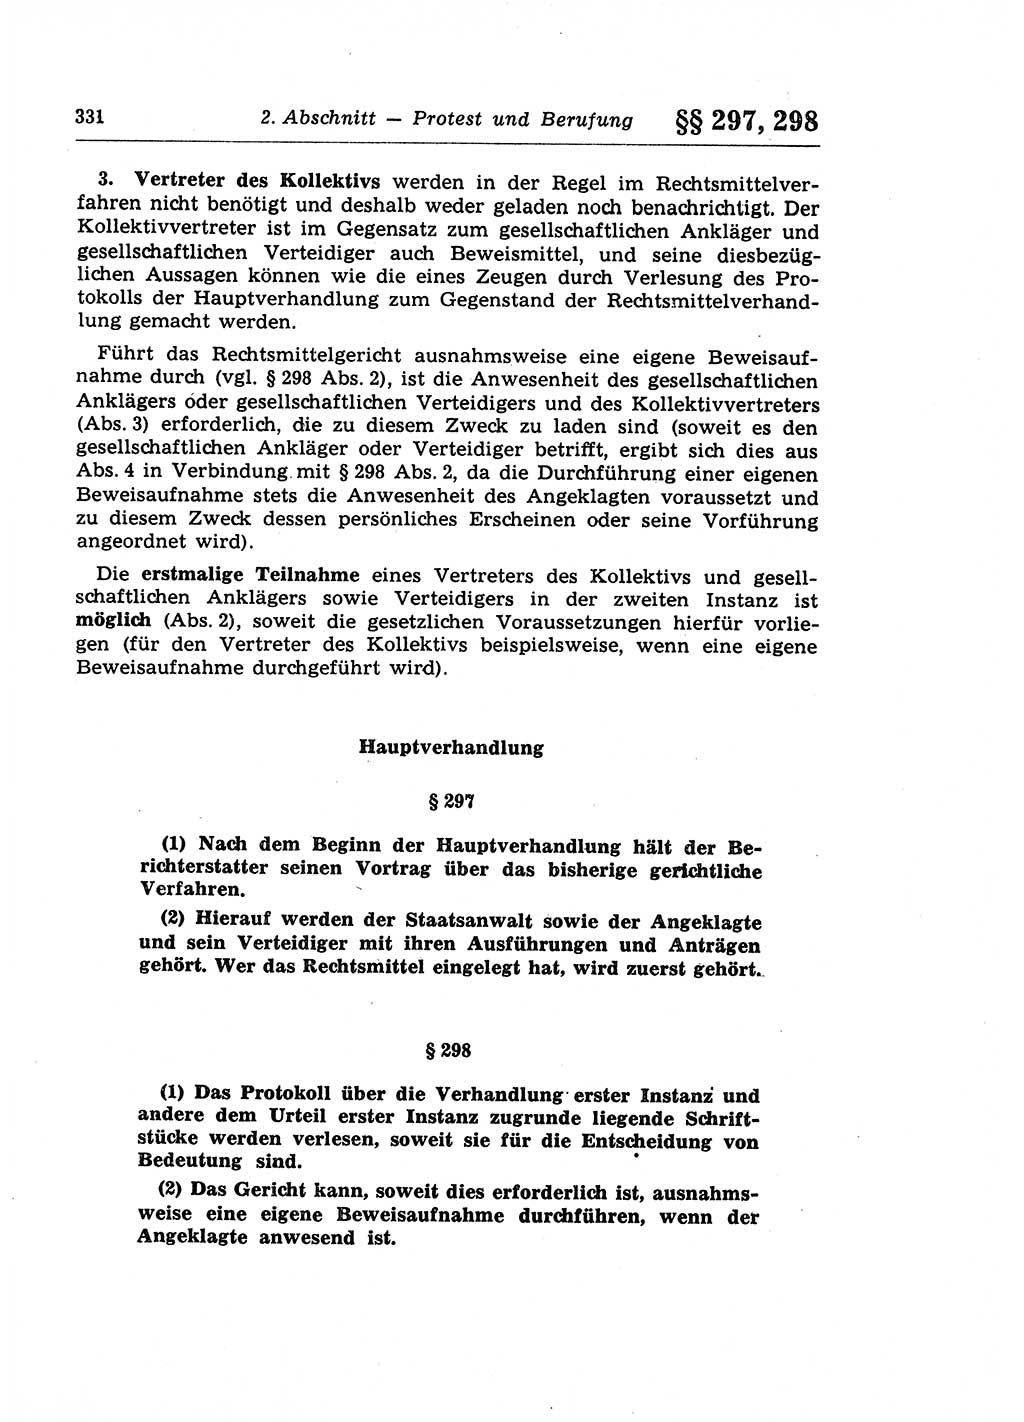 Strafprozeßrecht der DDR (Deutsche Demokratische Republik), Lehrkommentar zur Strafprozeßordnung (StPO) 1968, Seite 331 (Strafprozeßr. DDR Lehrkomm. StPO 19688, S. 331)